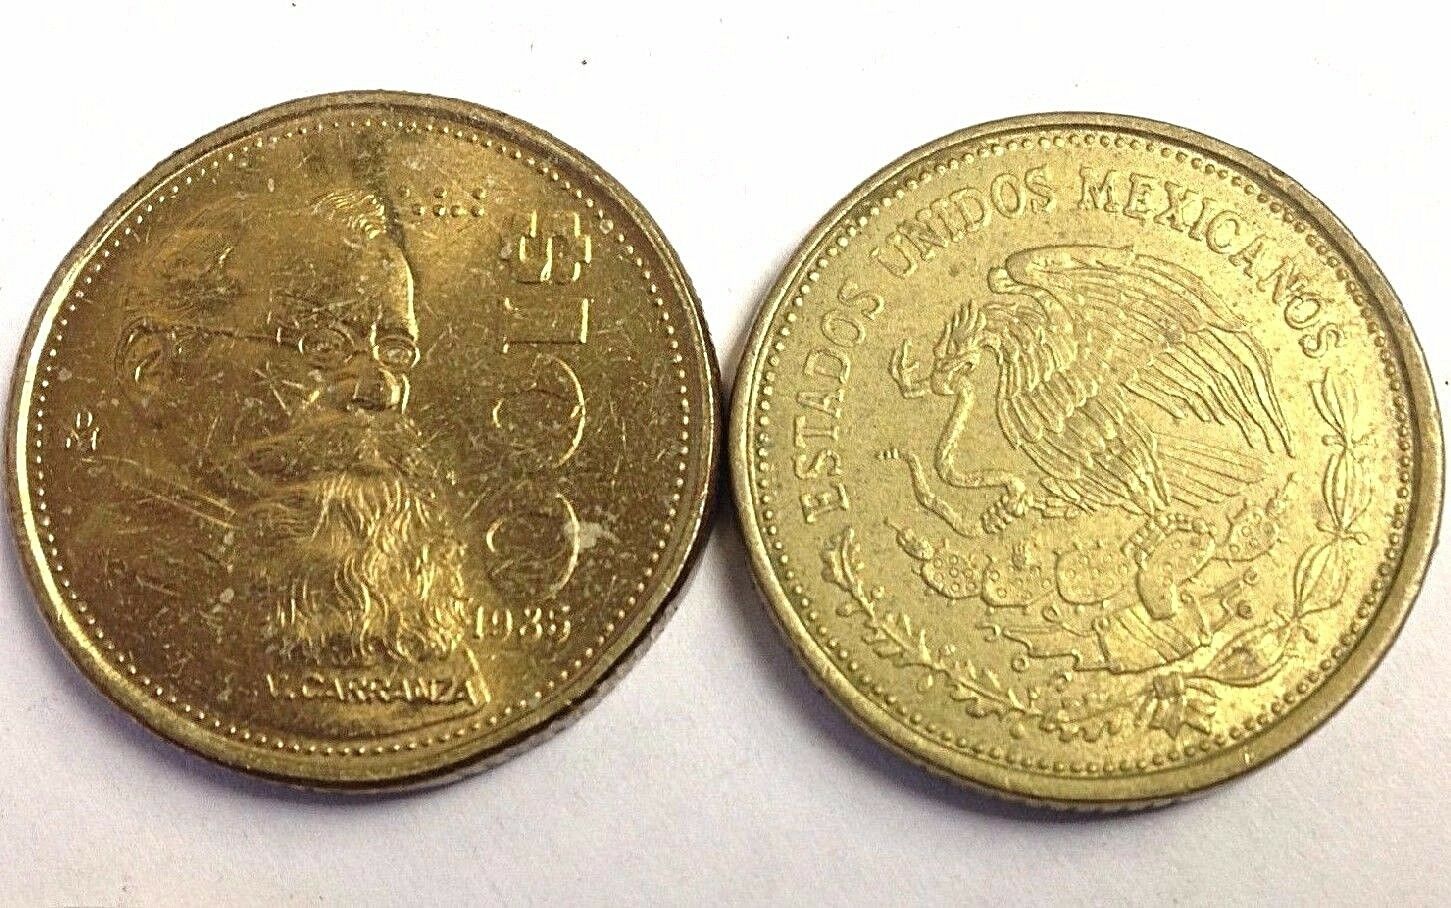 Mexico $100 Peso "carranza" Vintage Mexican 100 Pesos Coin (1984-1992 Type)